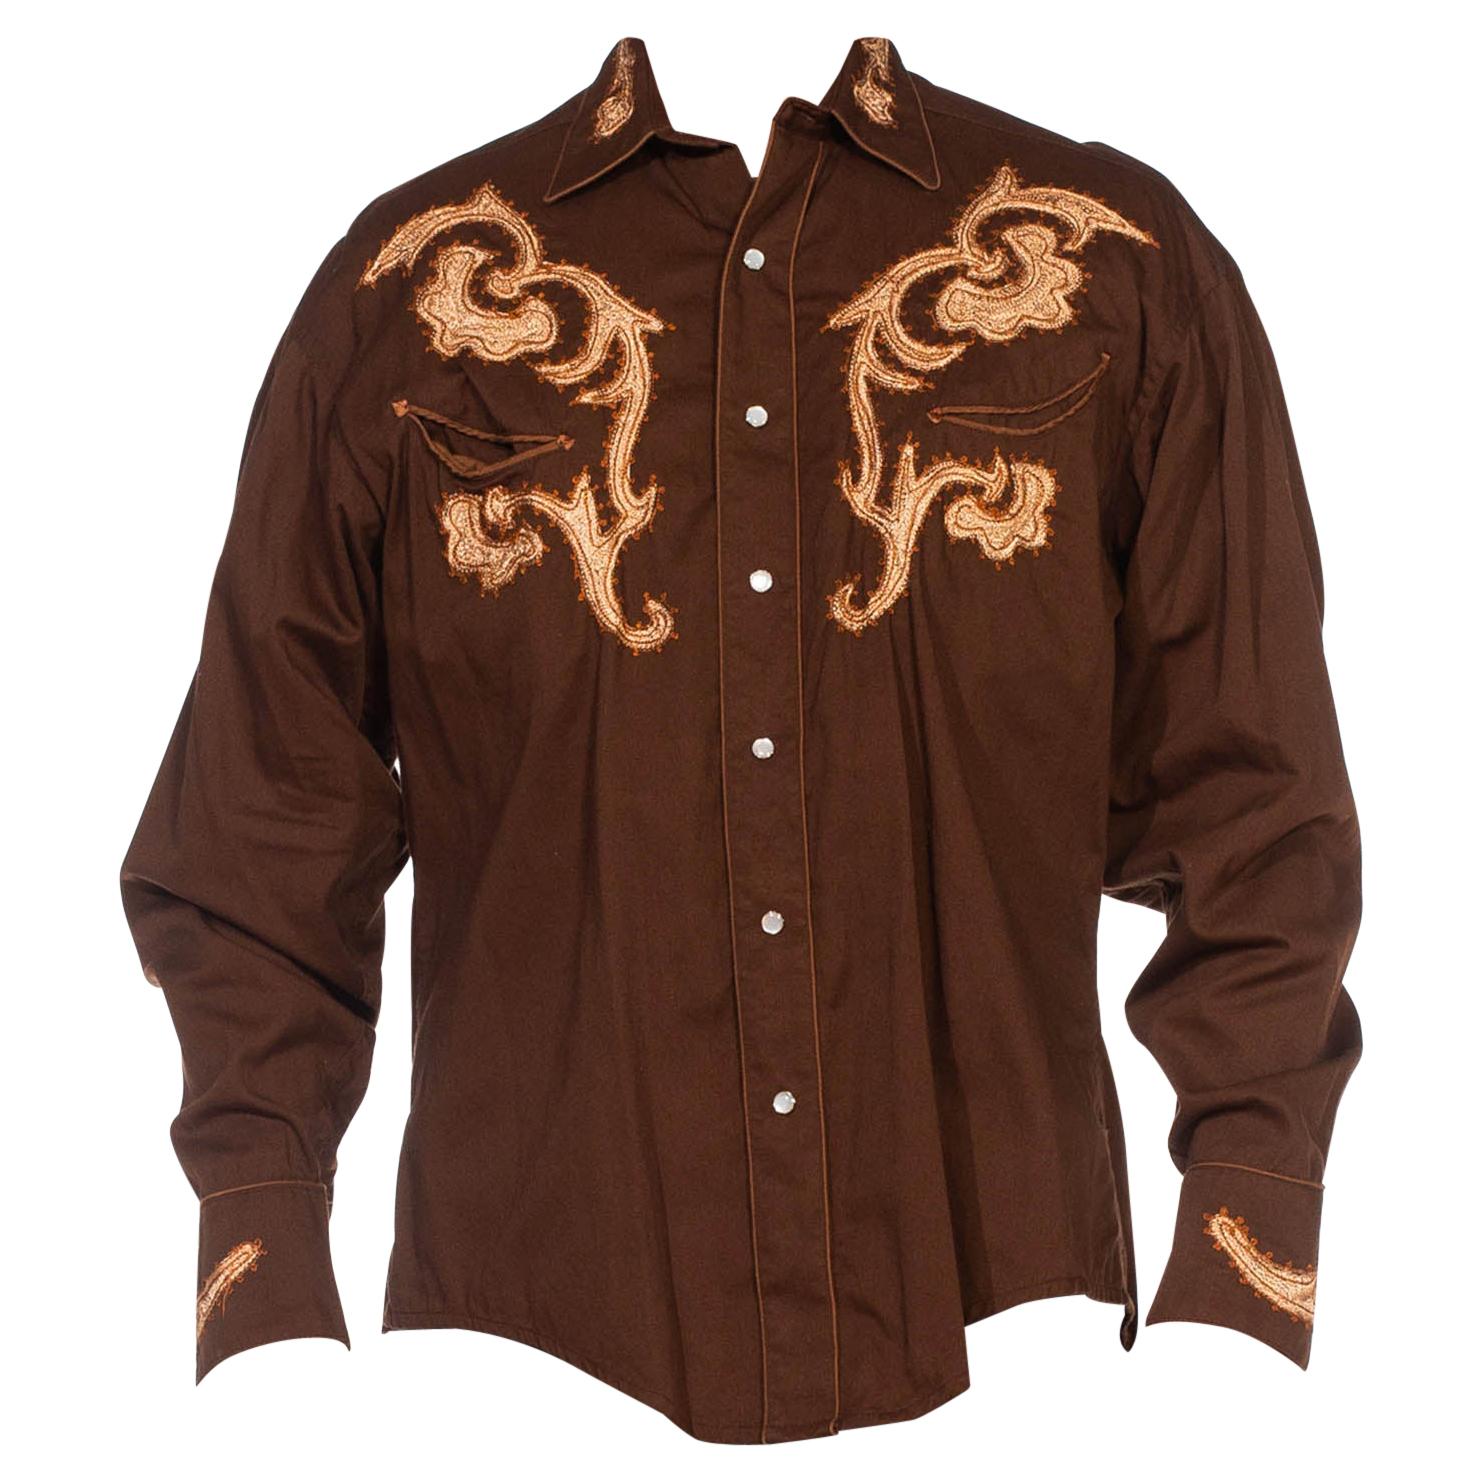 Besticktes langärmeliges Herrenhemd aus brauner Baumwolle aus den 1970er Jahren